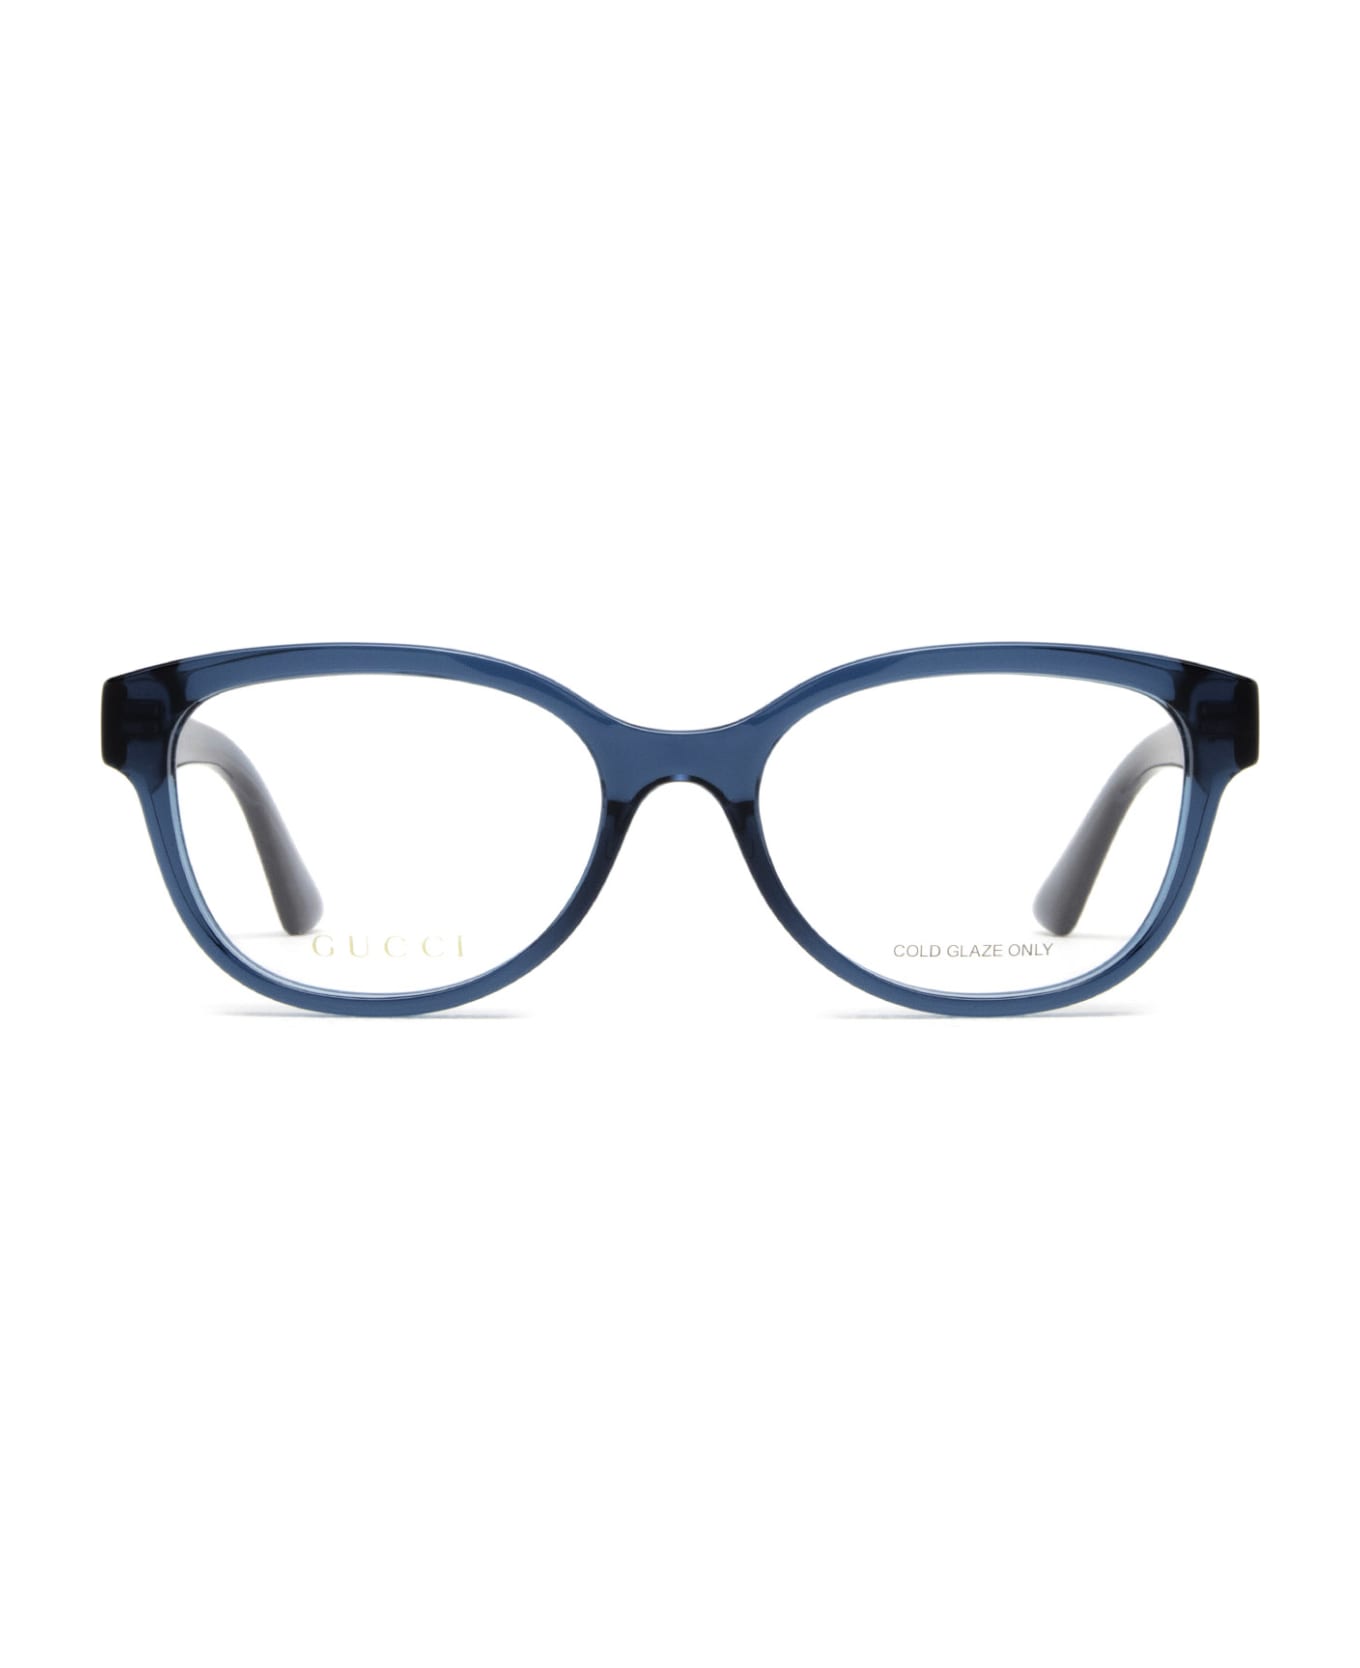 Gucci Eyewear Gg1115o Blue Glasses - Blue